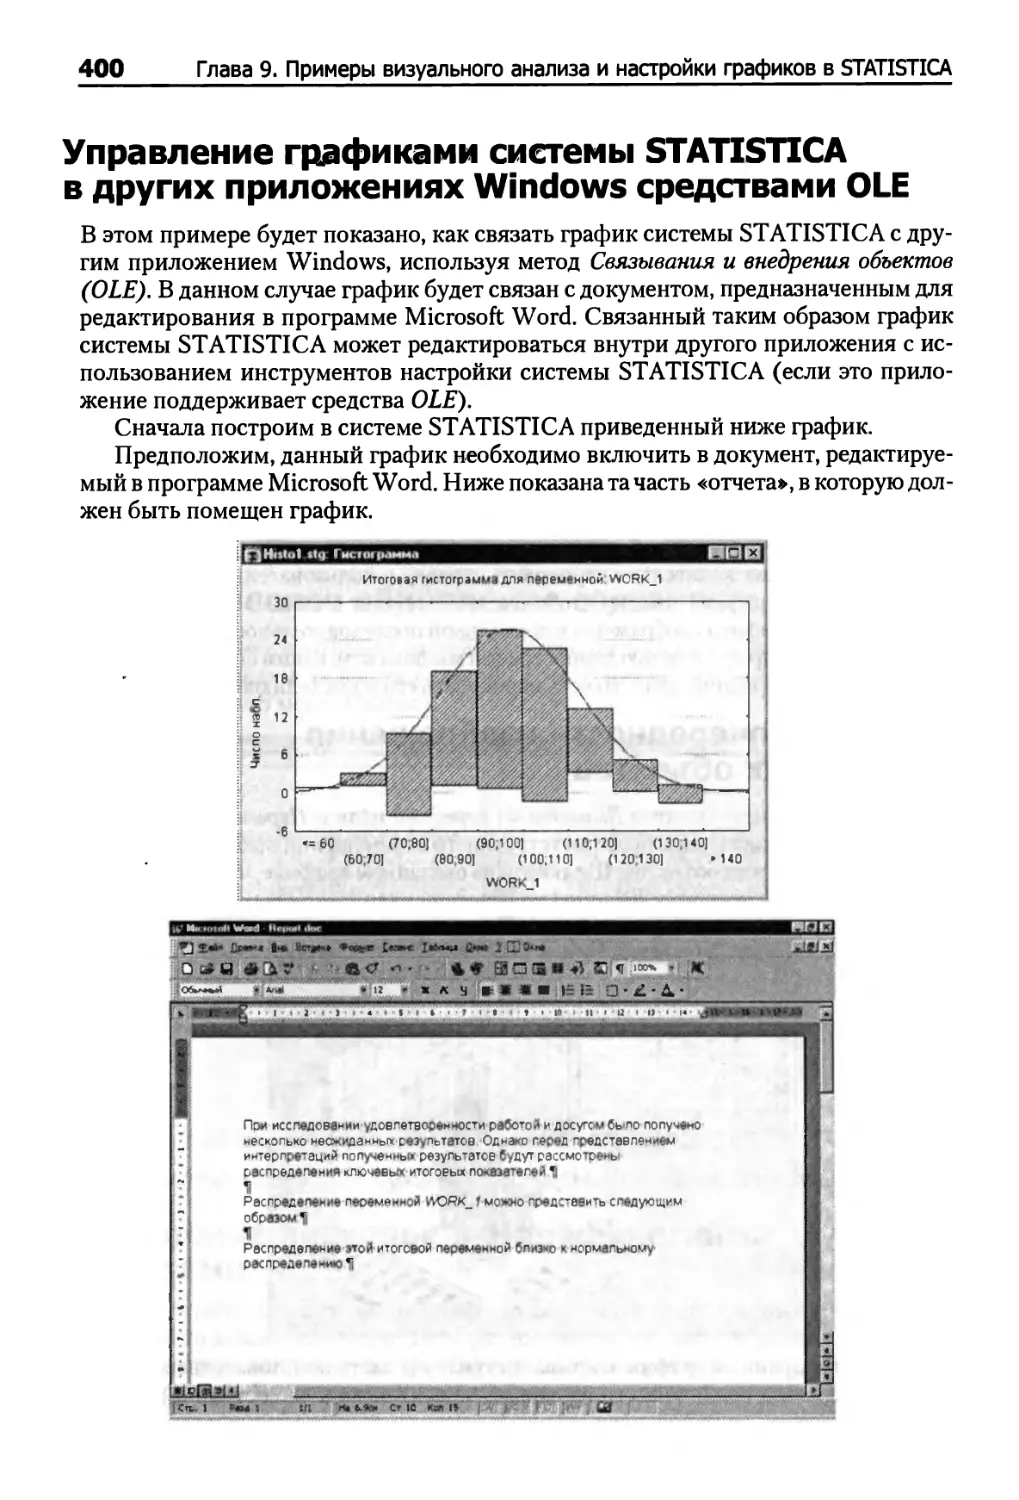 Управление графиками системы STATISTICA в других приложениях Windows средствами OLE